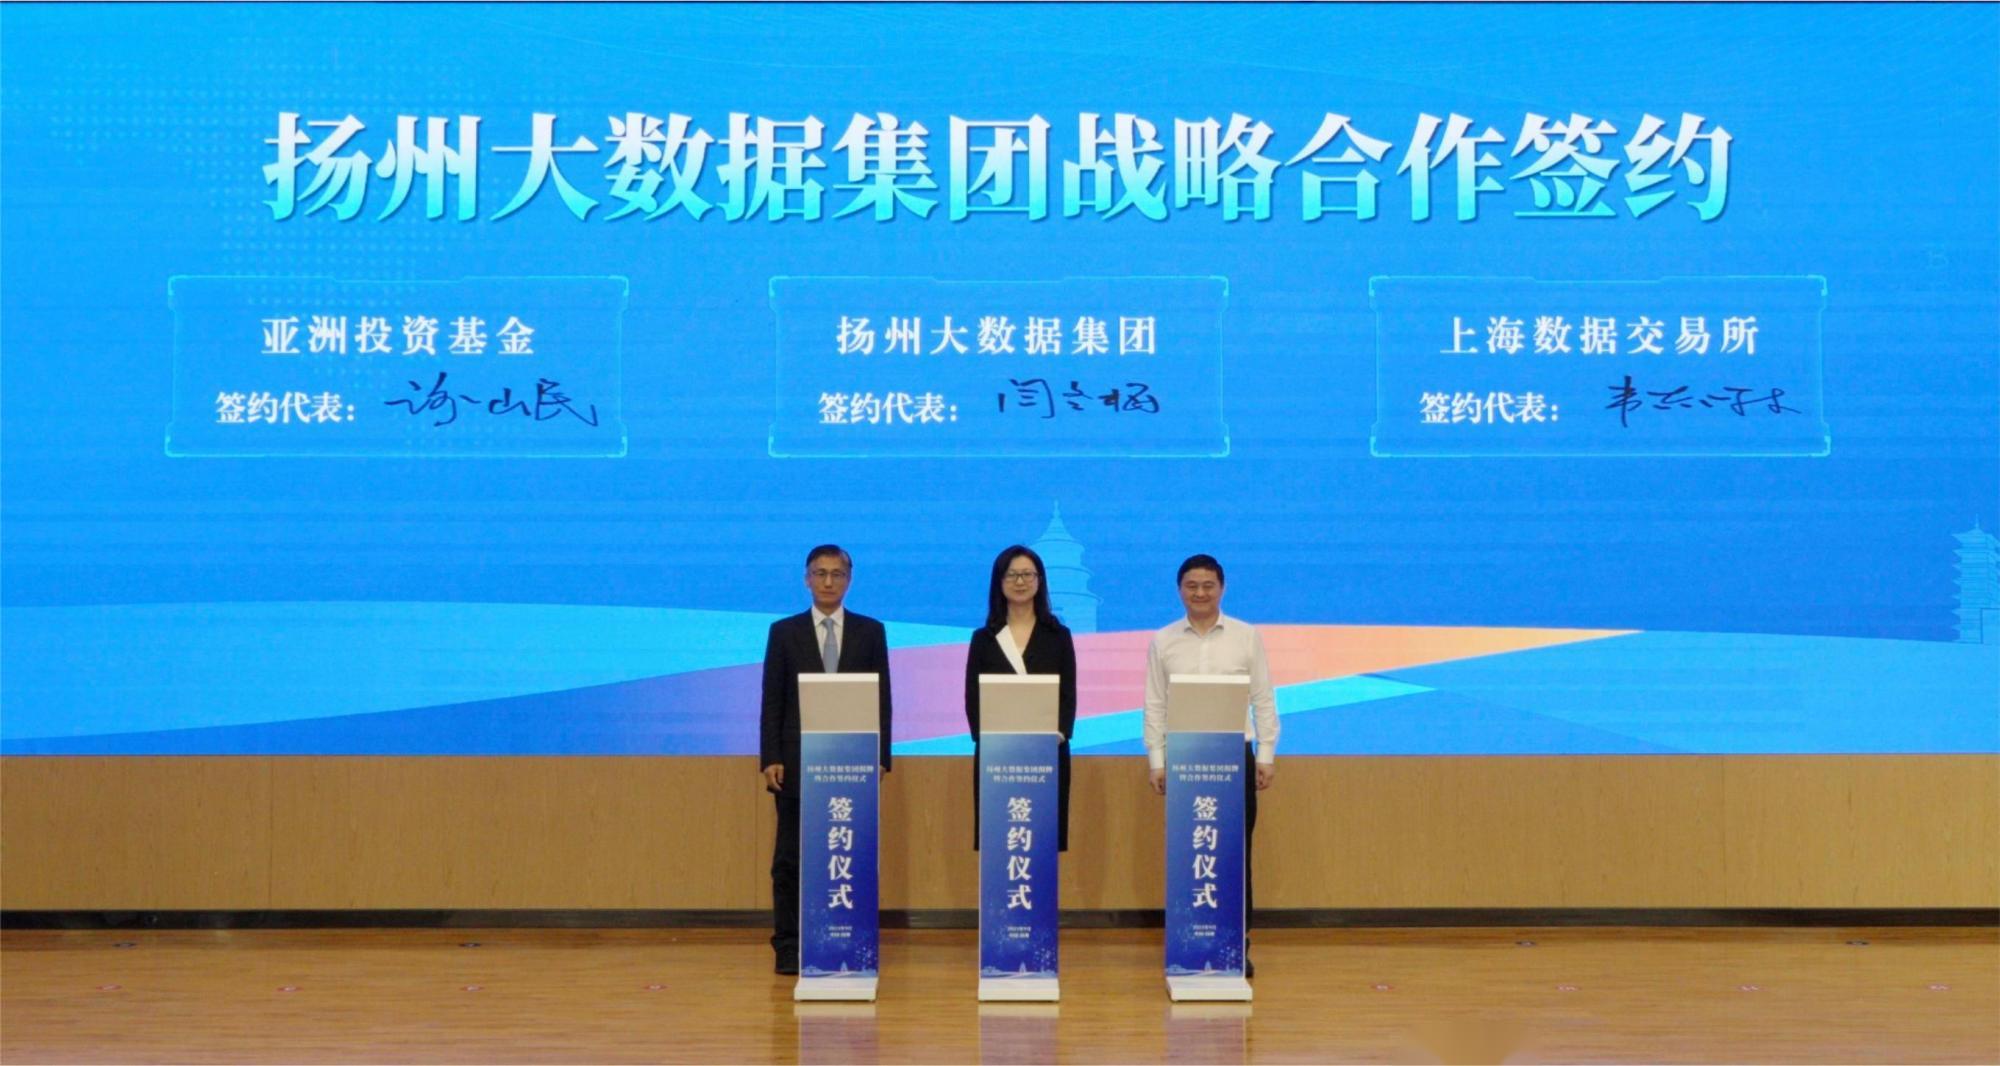 10 扬州大数据集团与亚洲投资基金、上海数据交易所签订战略合作协议.jpg